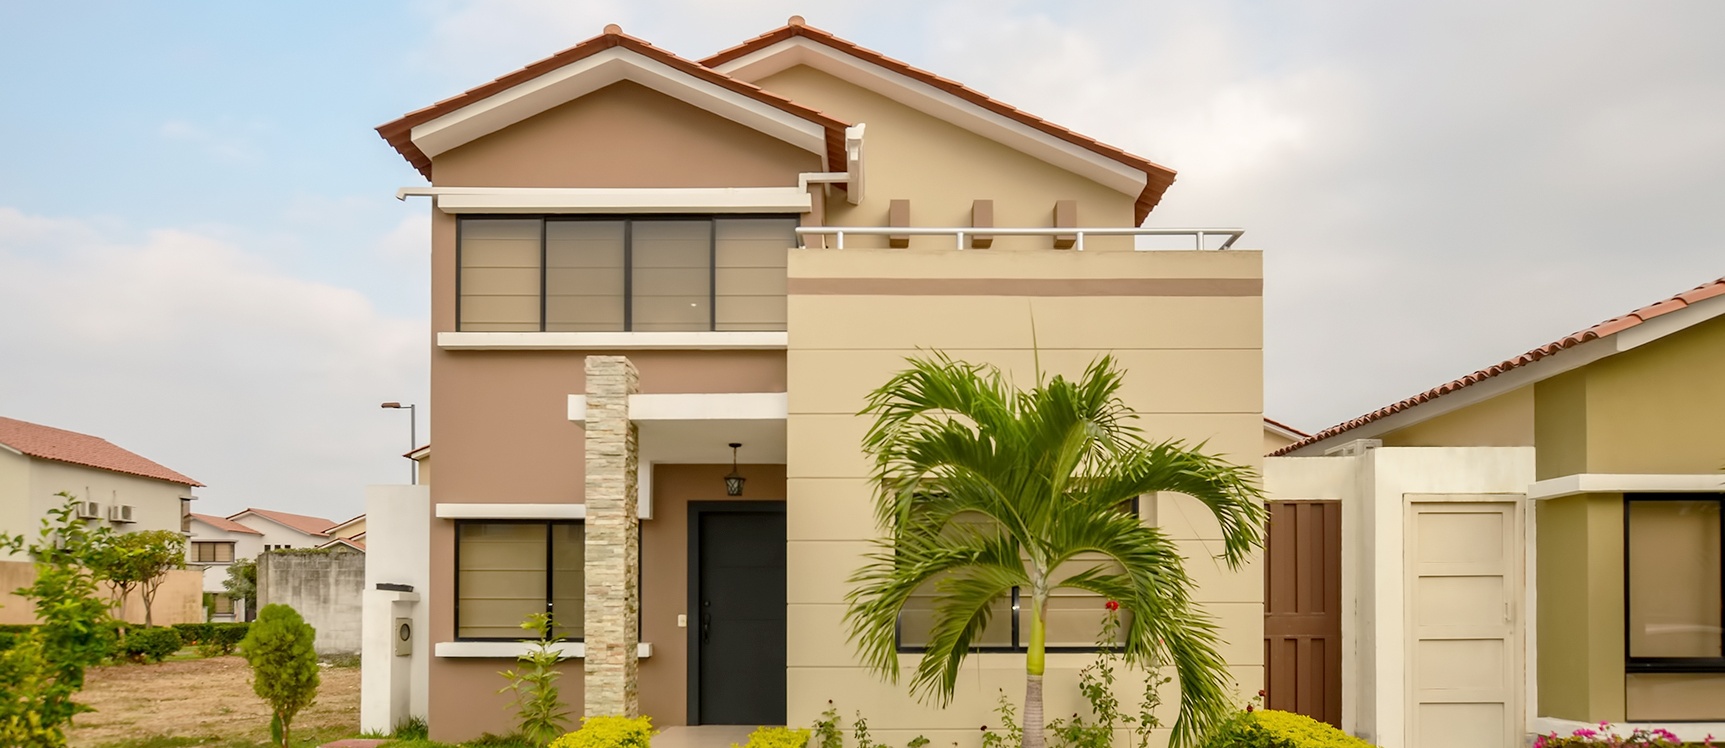 GeoBienes - Casa en venta en Urbanización Ciudad Celeste sector Vía a Samborondón - Plusvalia Guayaquil Casas de venta y alquiler Inmobiliaria Ecuador